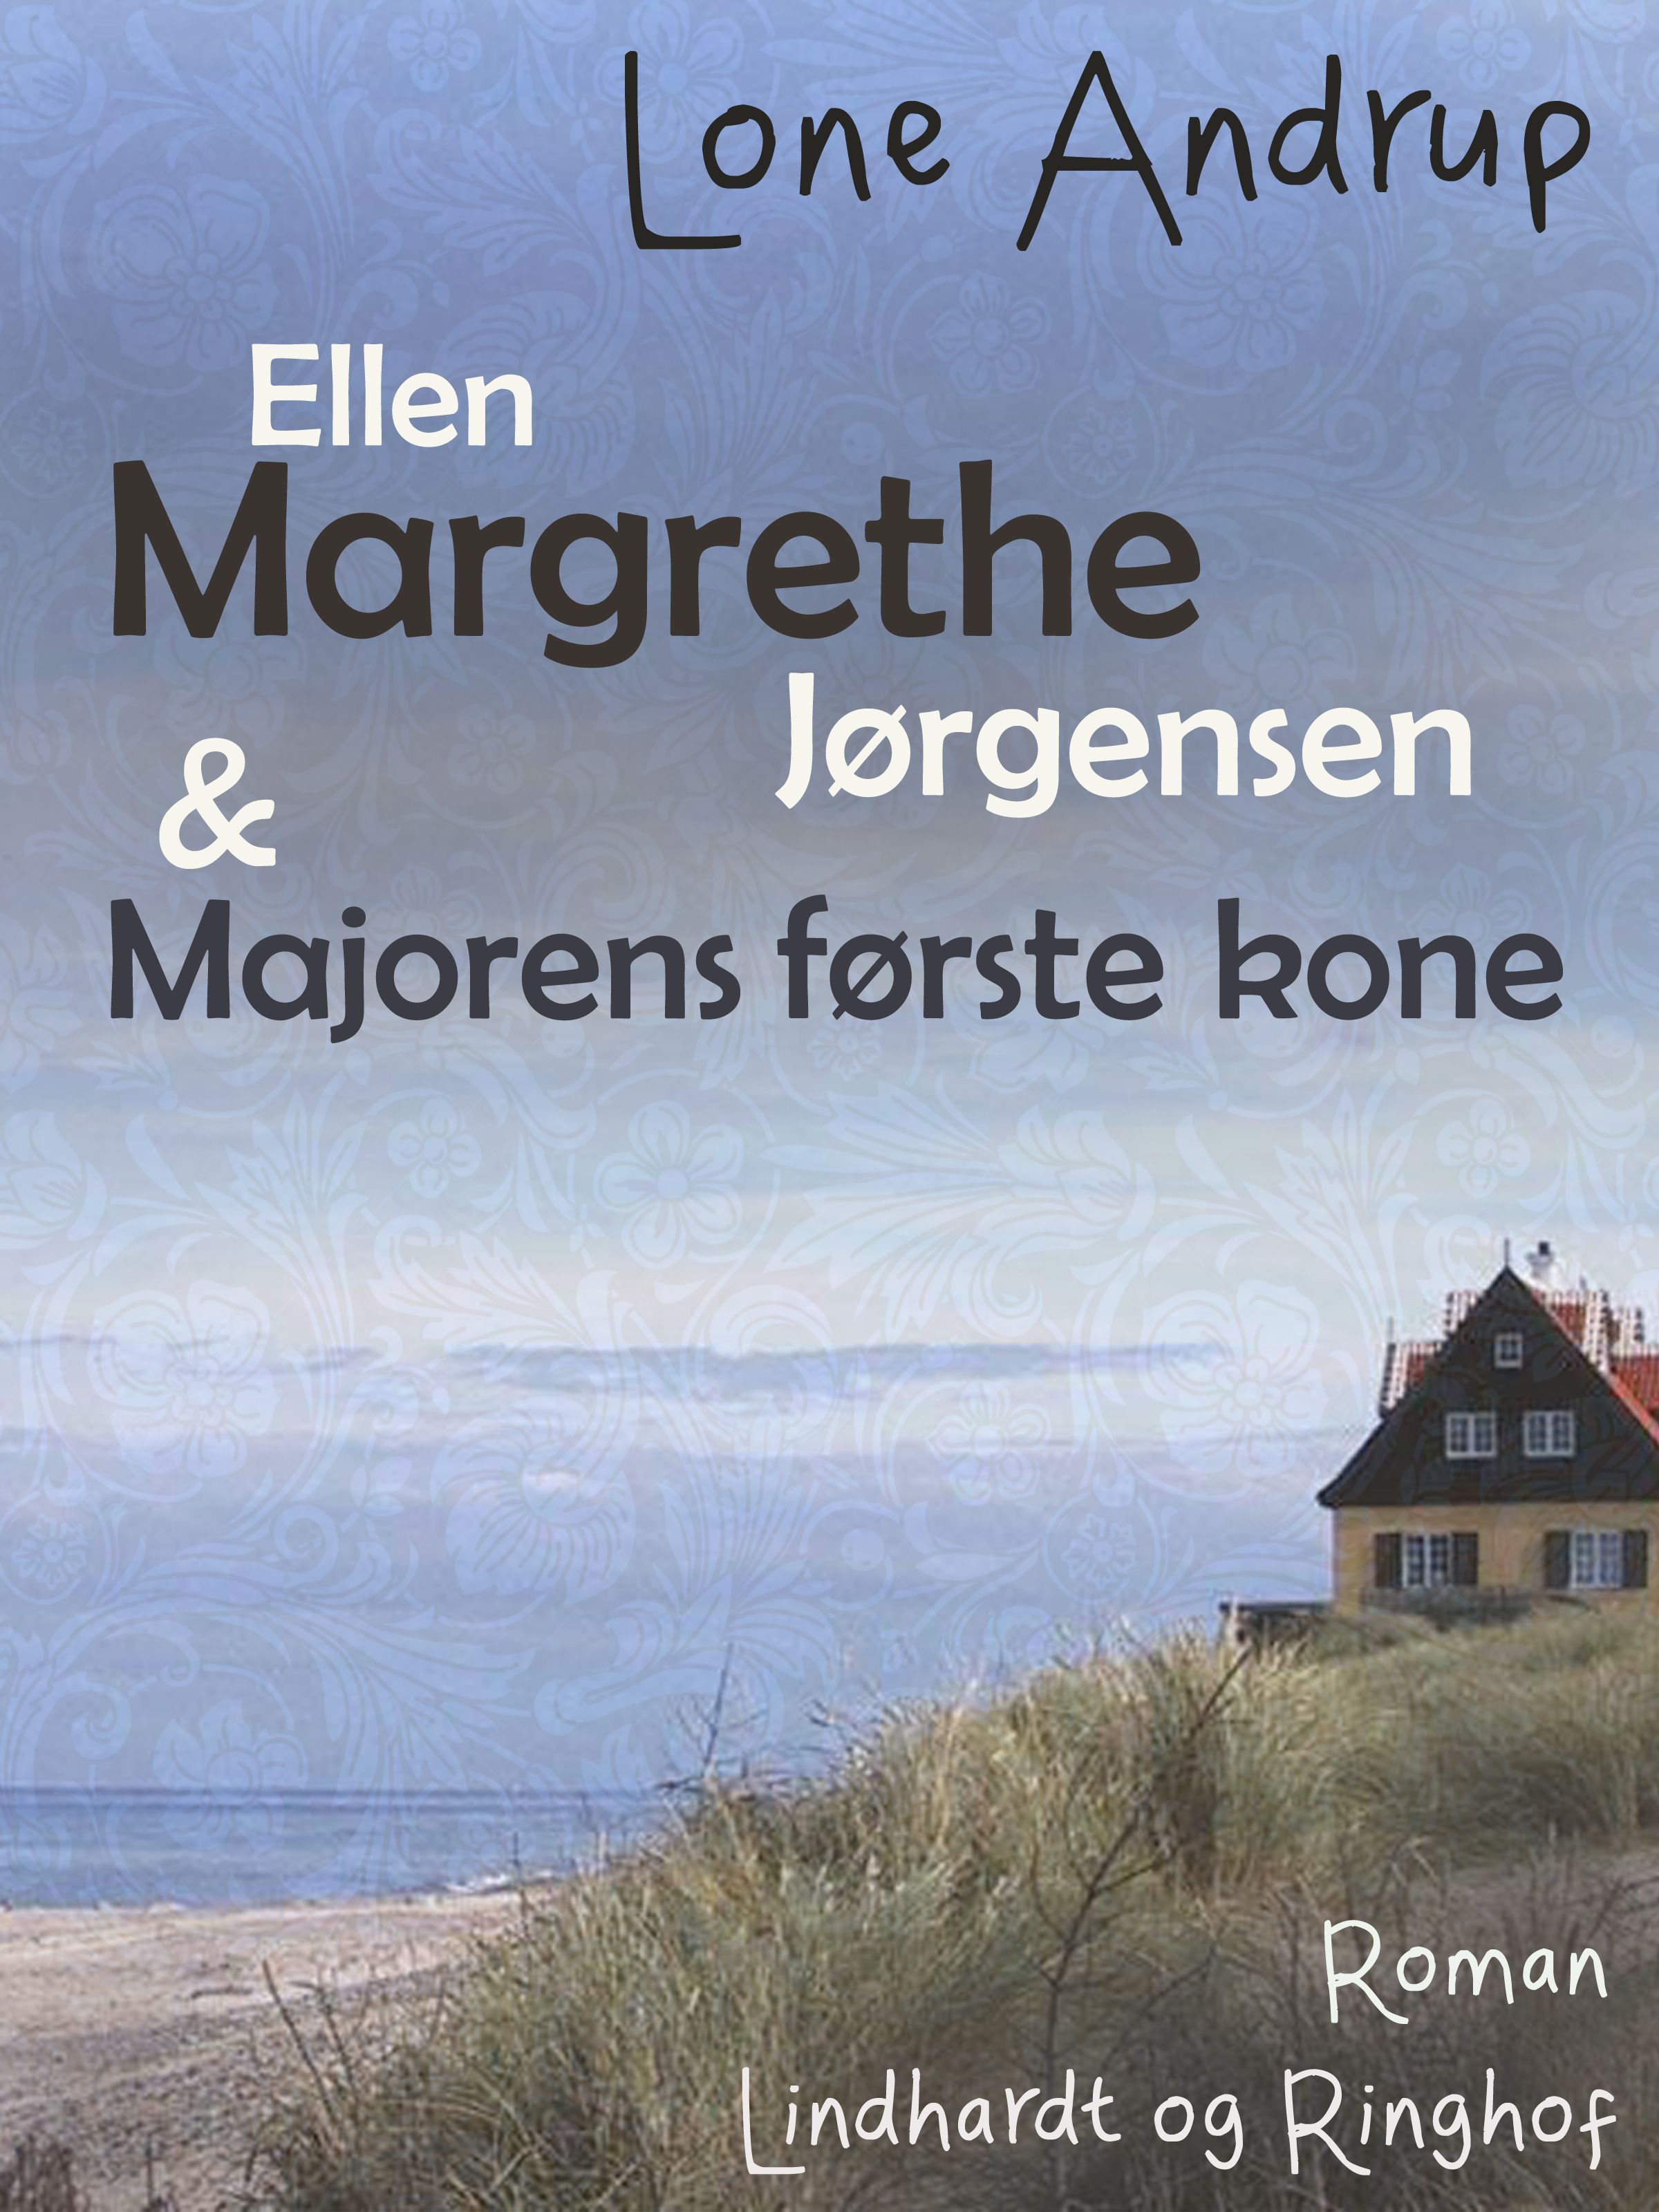 Ellen Margrethe Jørgensen & Majorens første kone, lydbog af Lone Andrup